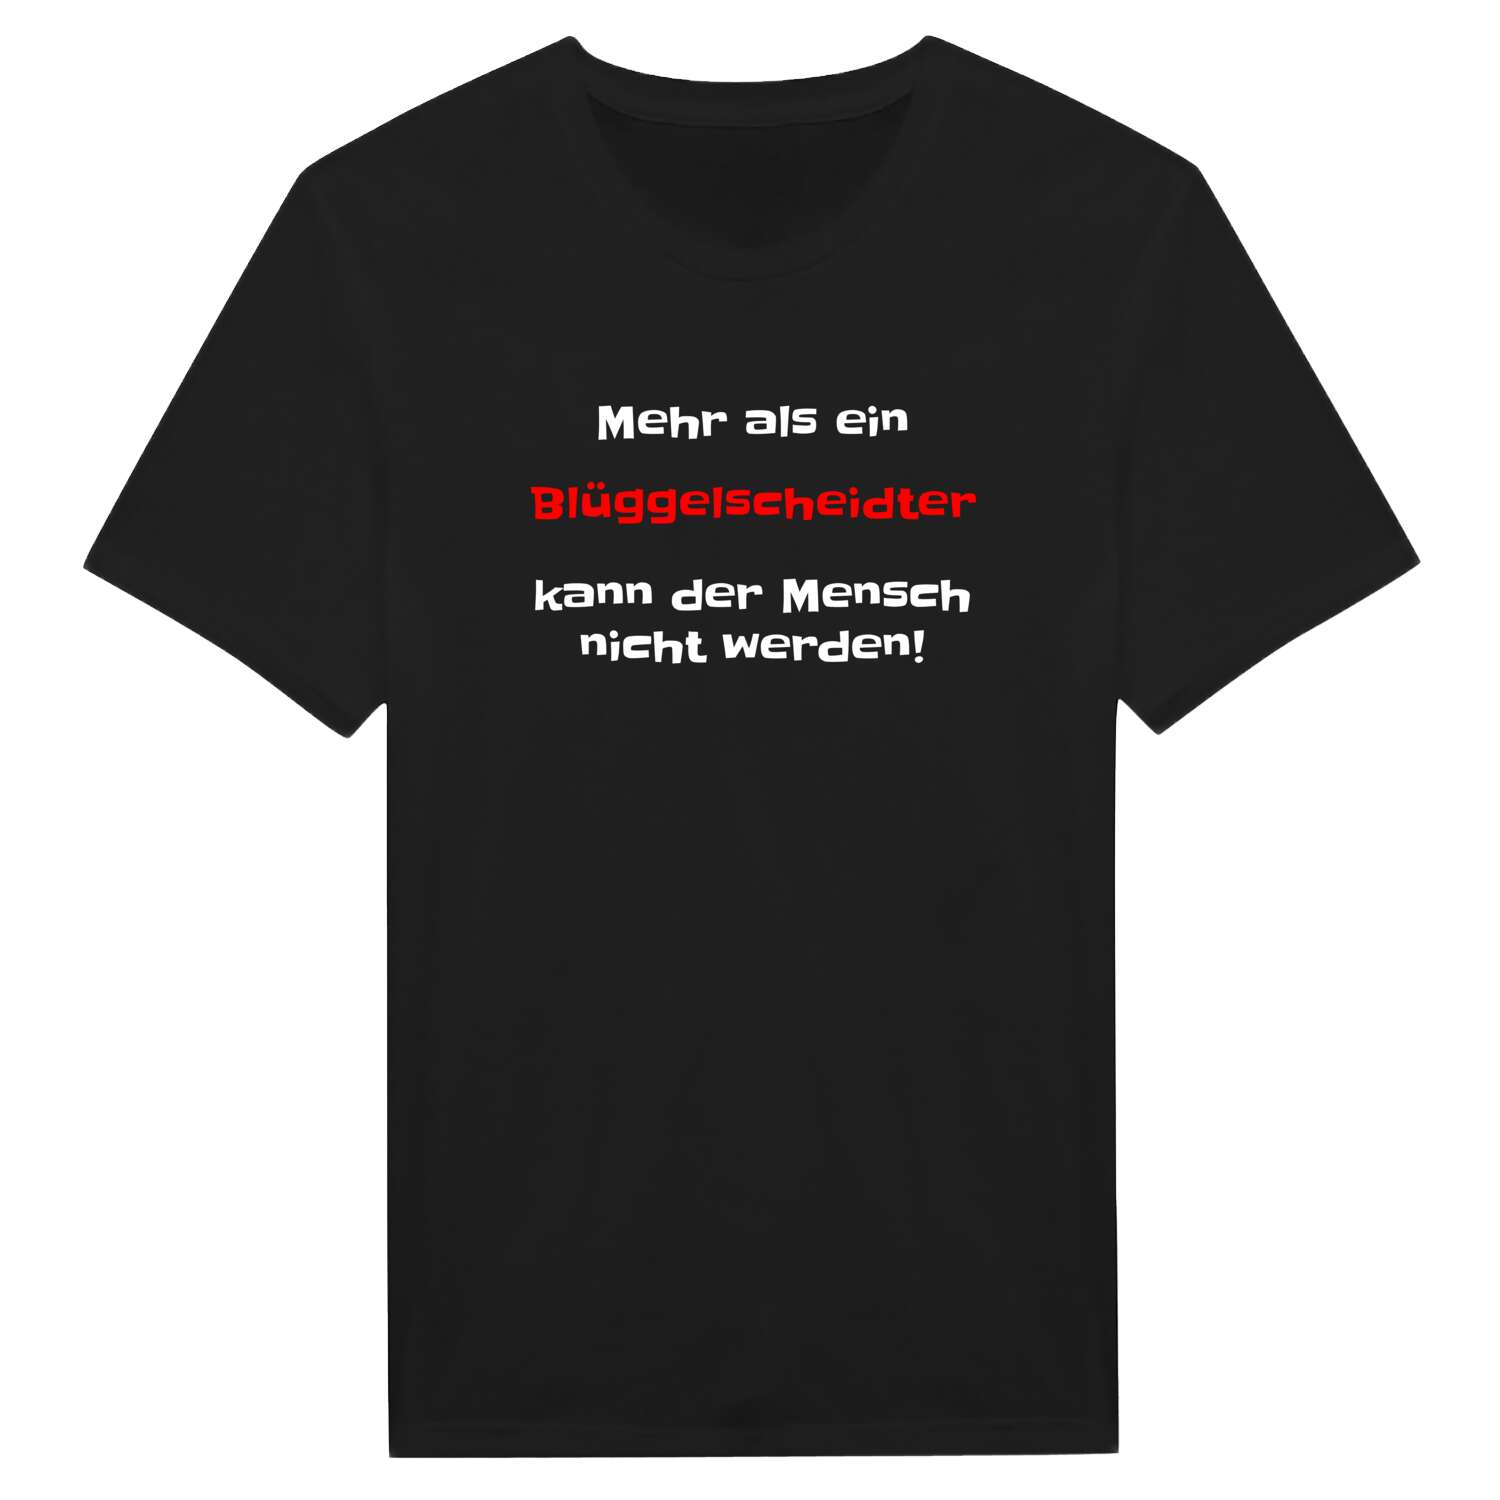 Blüggelscheidt T-Shirt »Mehr als ein«